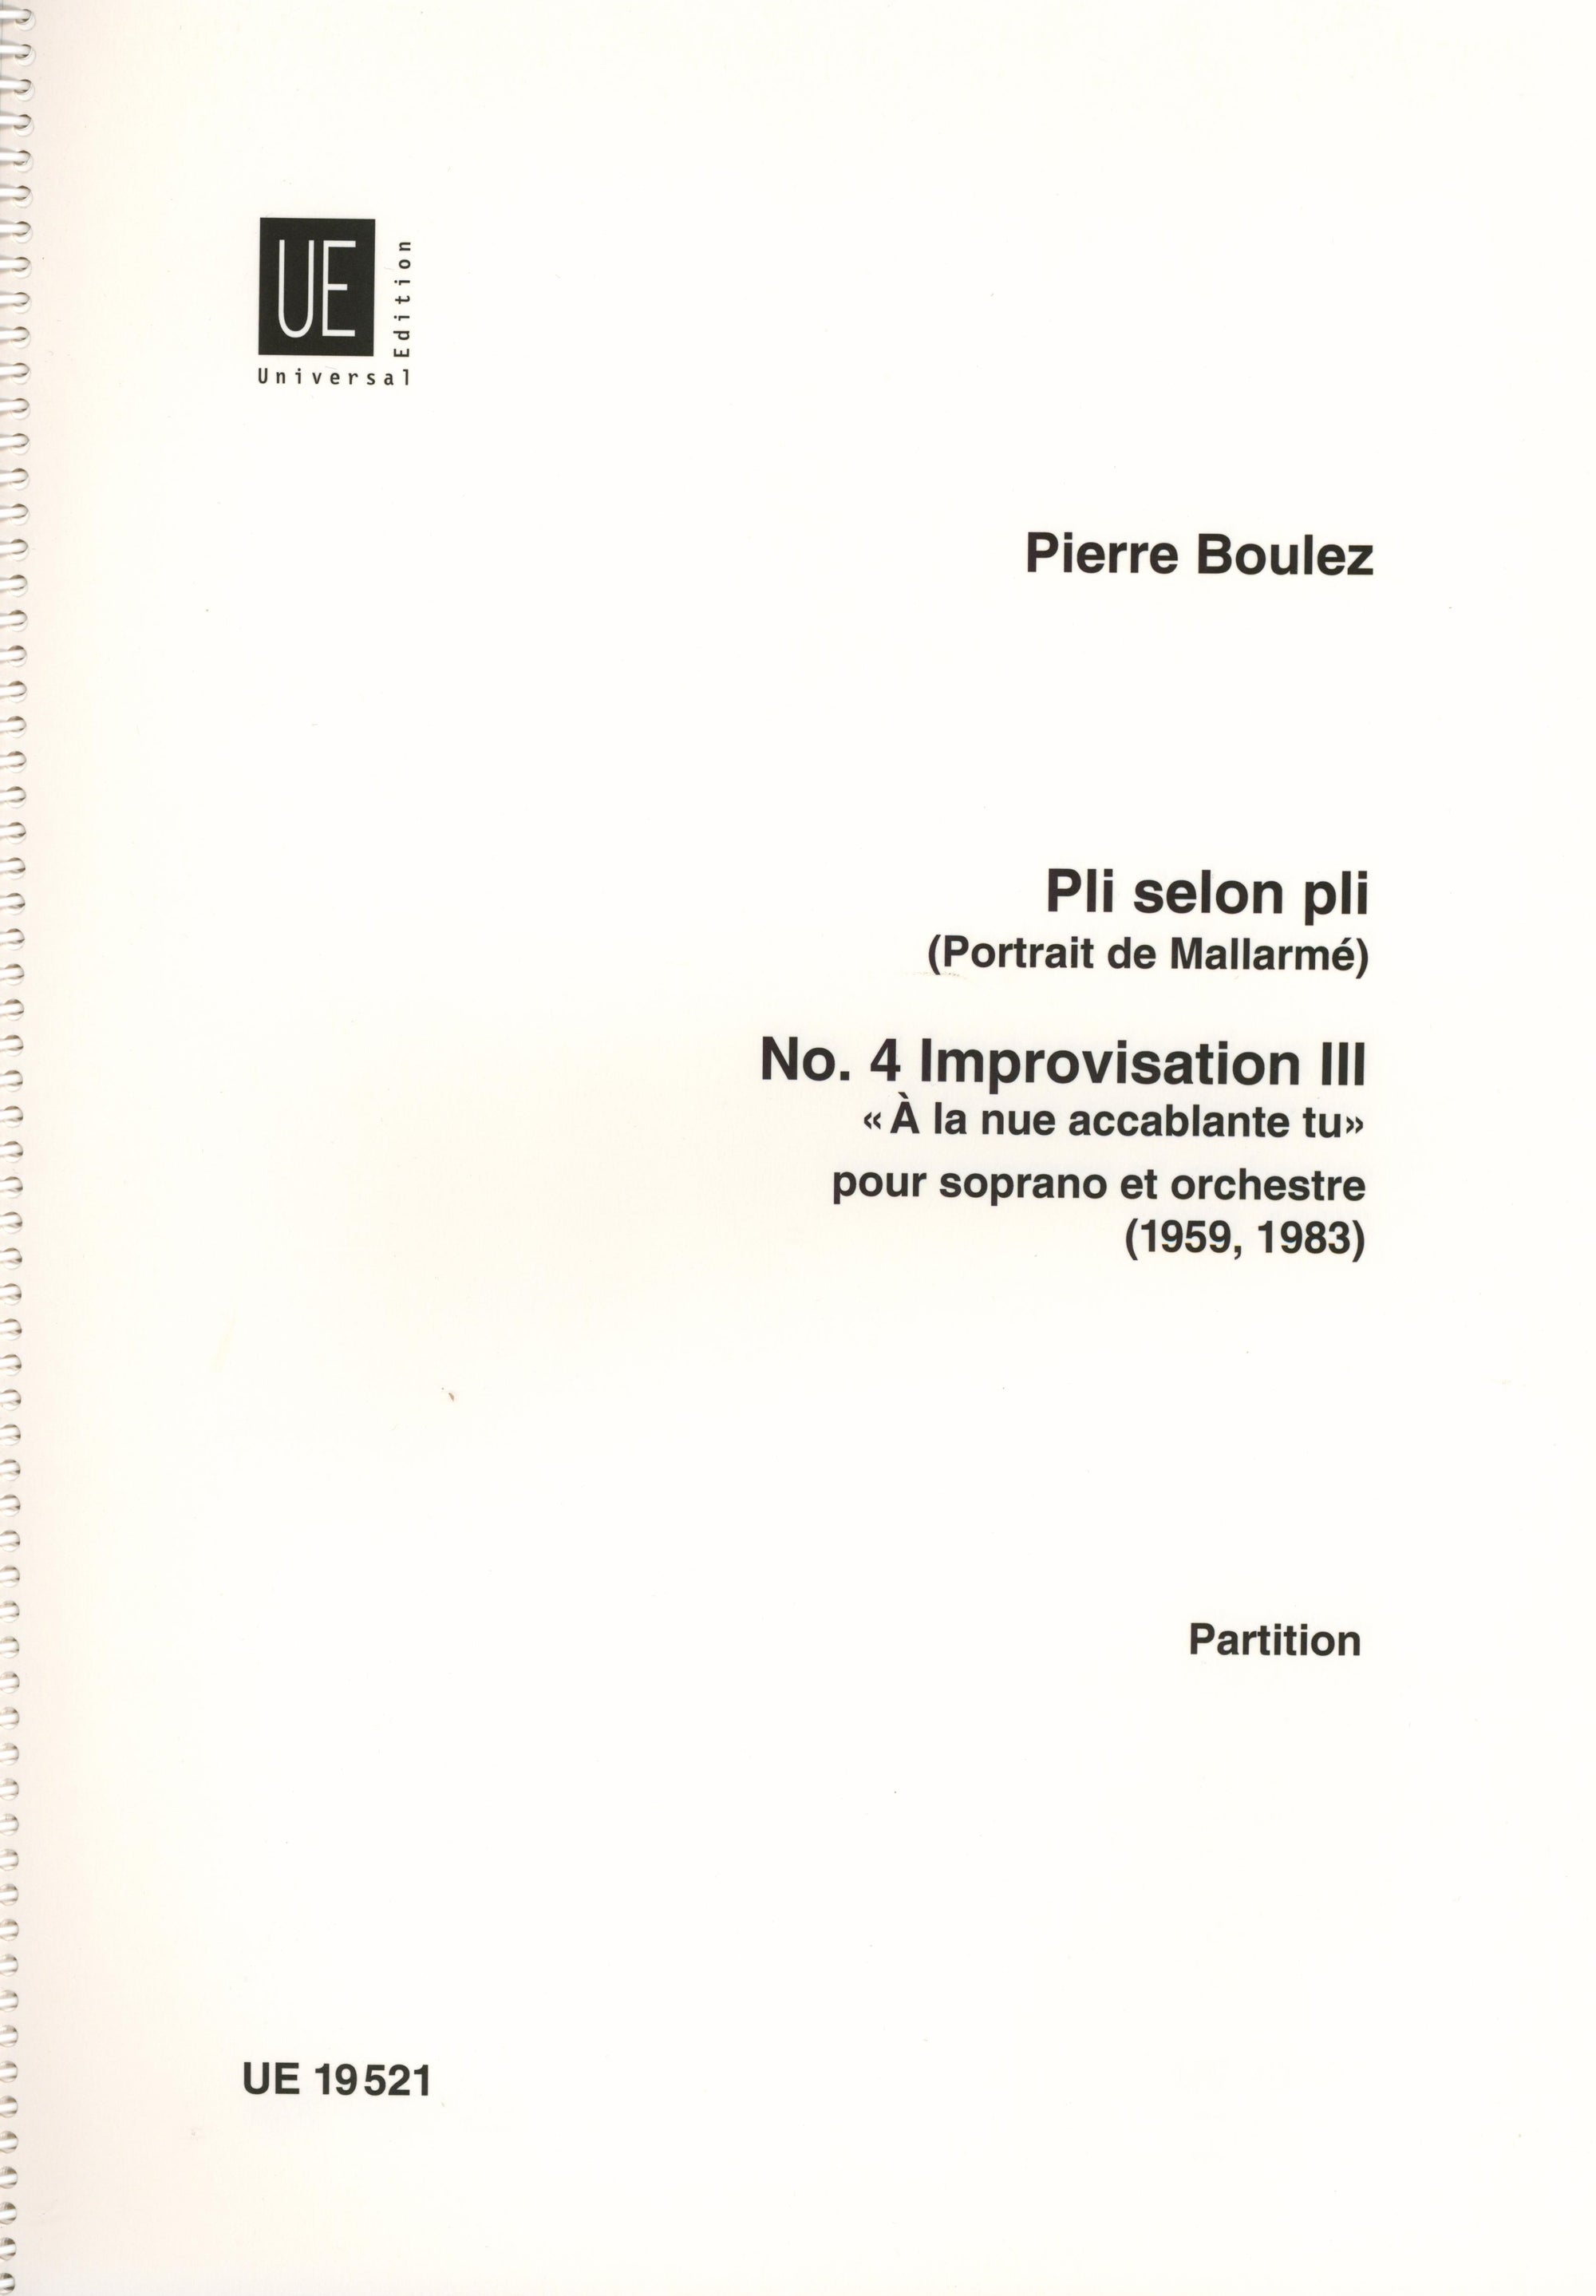 Pierre: Improvisation III, No. 4 from "Pli selon pli"